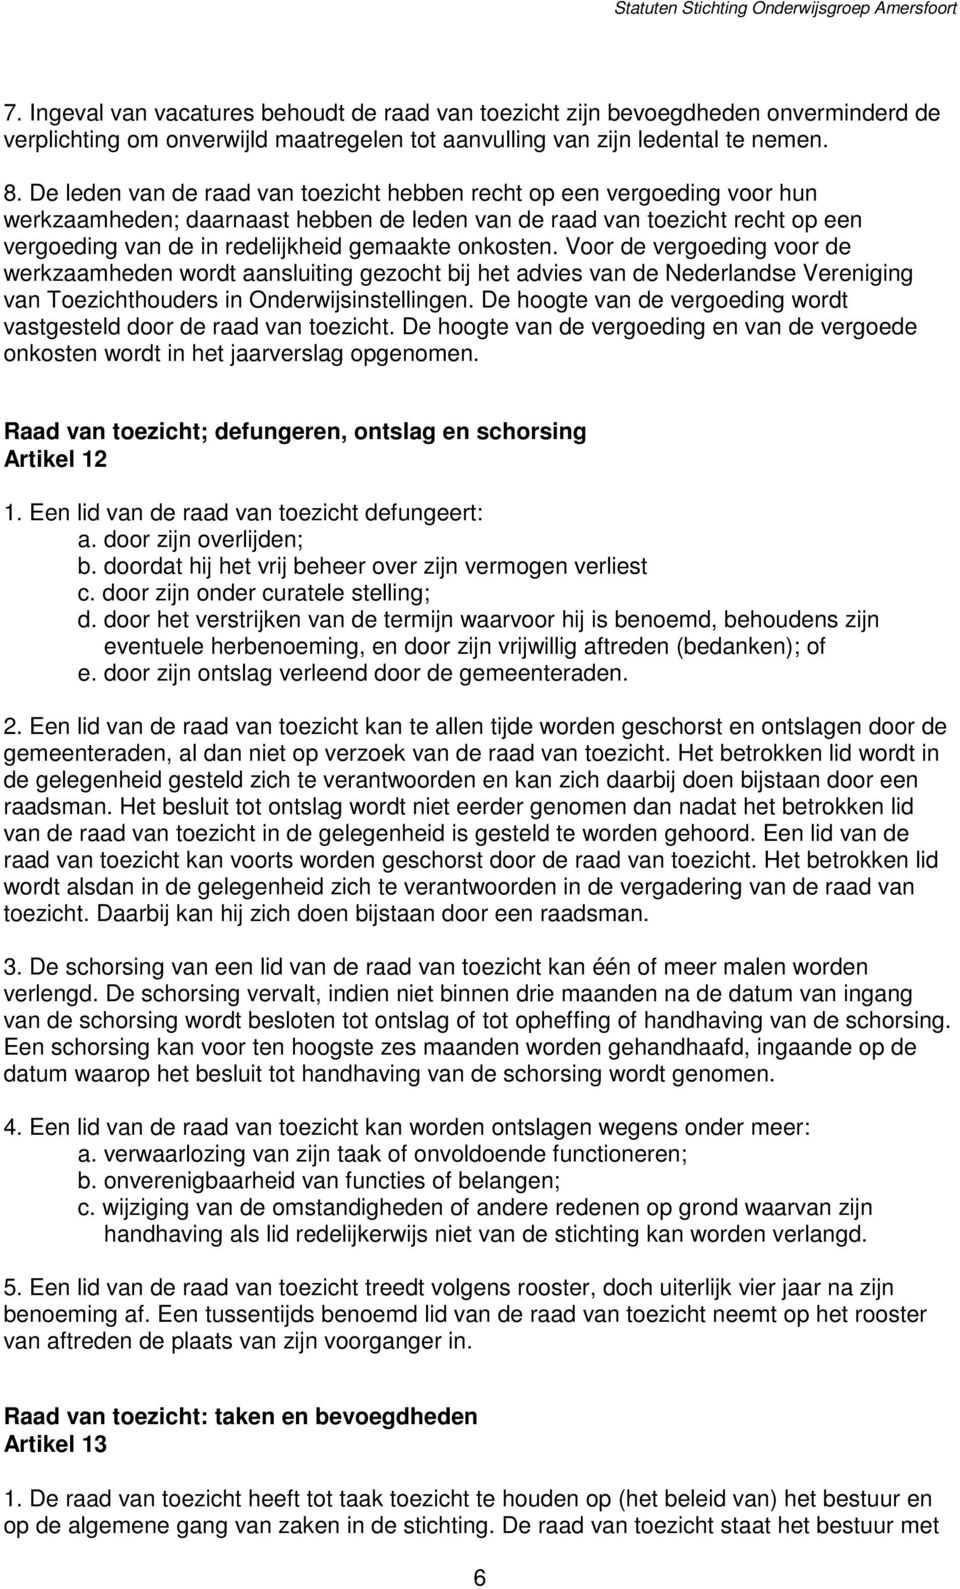 onkosten. Voor de vergoeding voor de werkzaamheden wordt aansluiting gezocht bij het advies van de Nederlandse Vereniging van Toezichthouders in Onderwijsinstellingen.